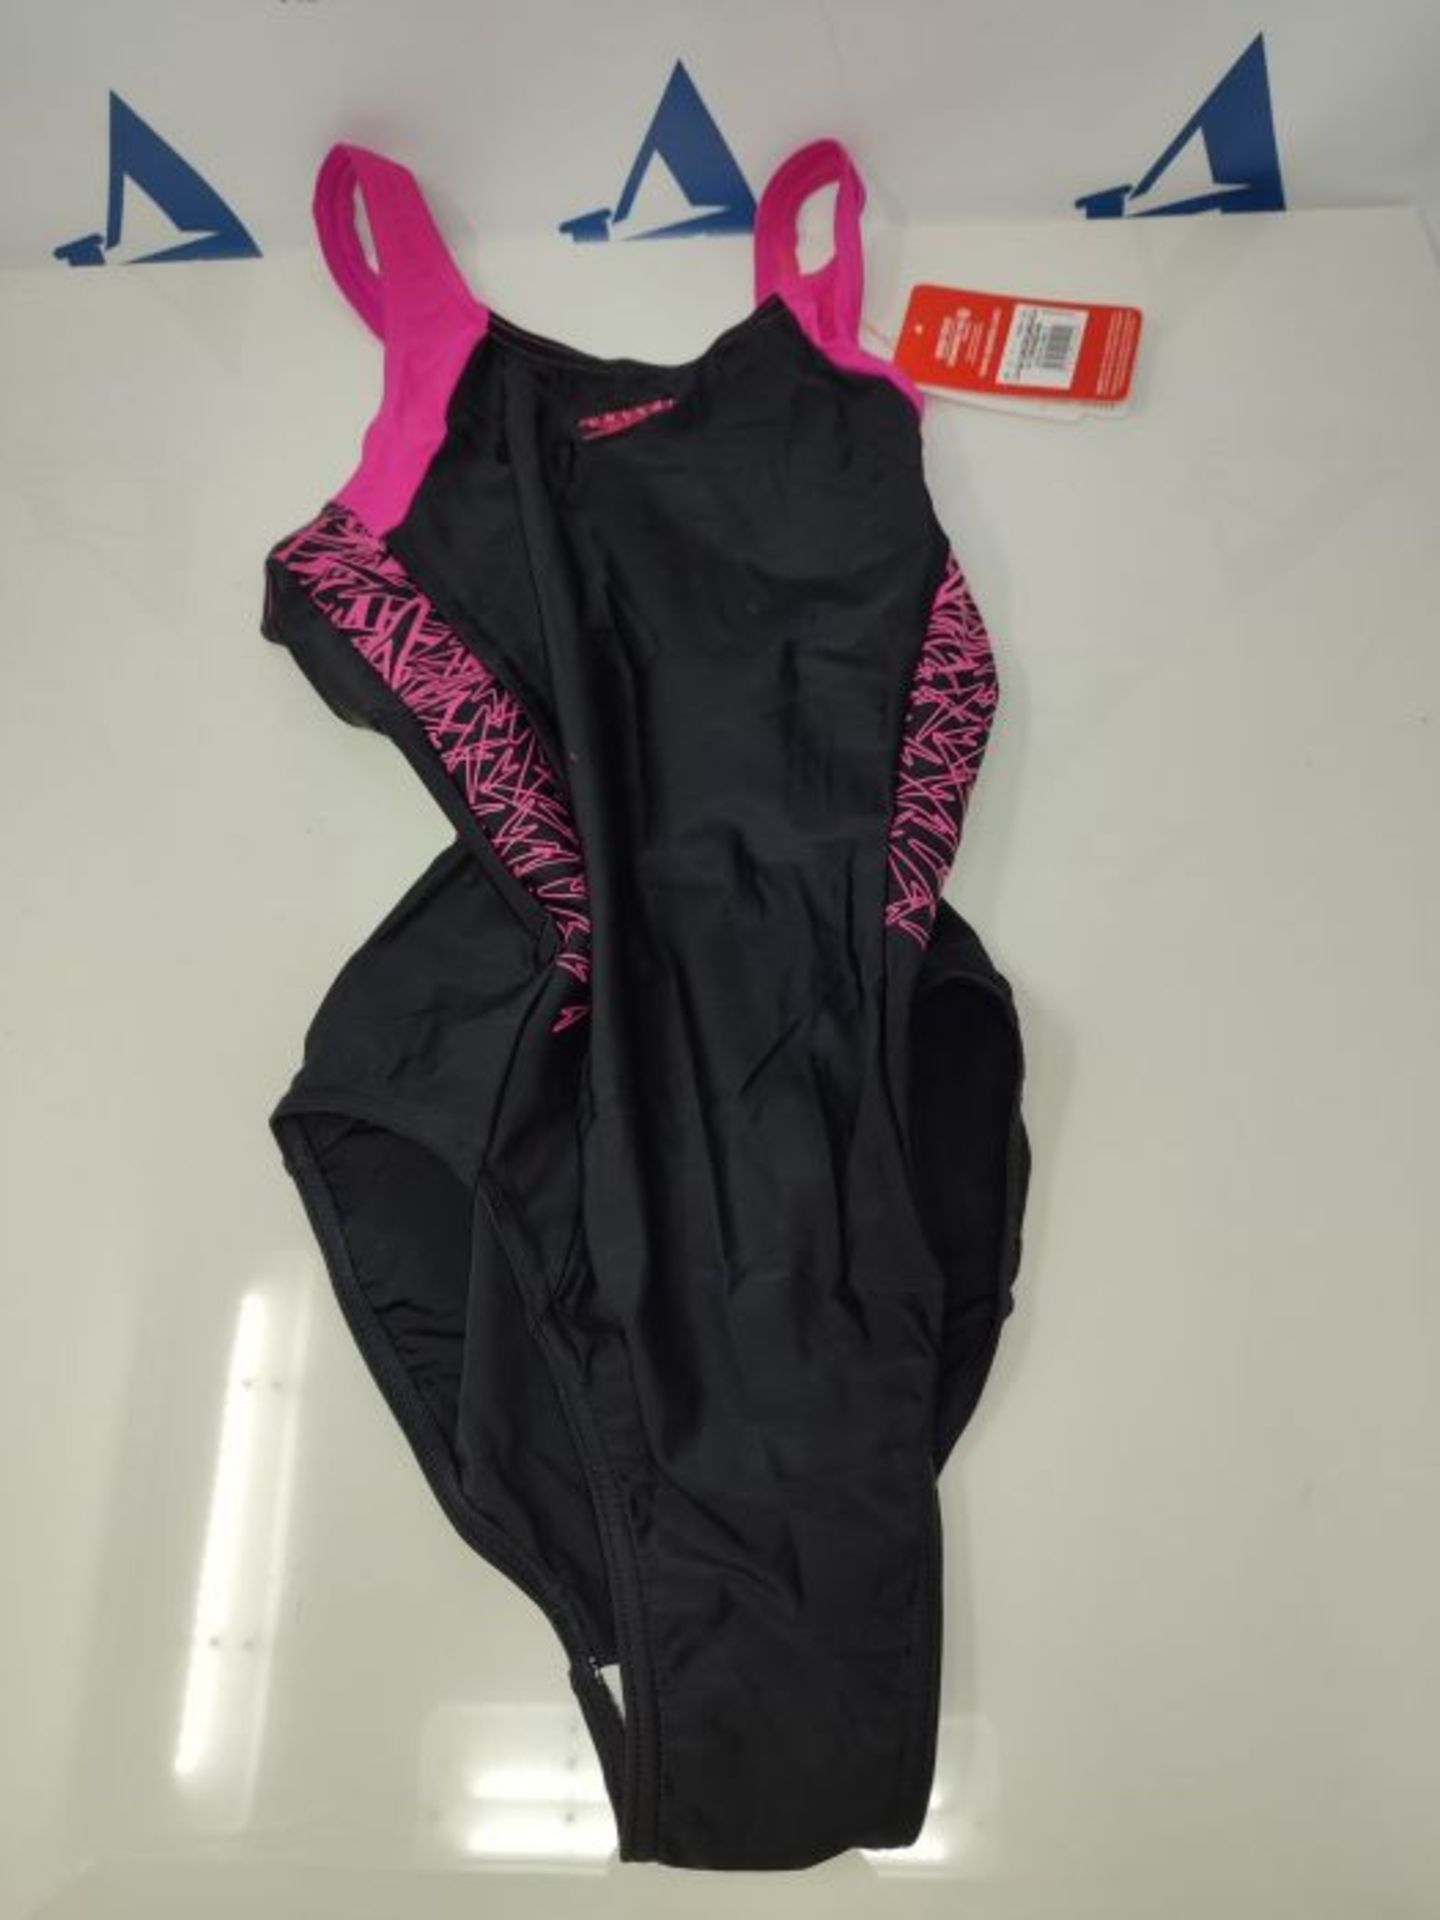 Speedo MÃ¤dchen Swimwear Boom Splice Muscleback, Black/Electric Pink, 164, 8-10844B3 - Image 2 of 3